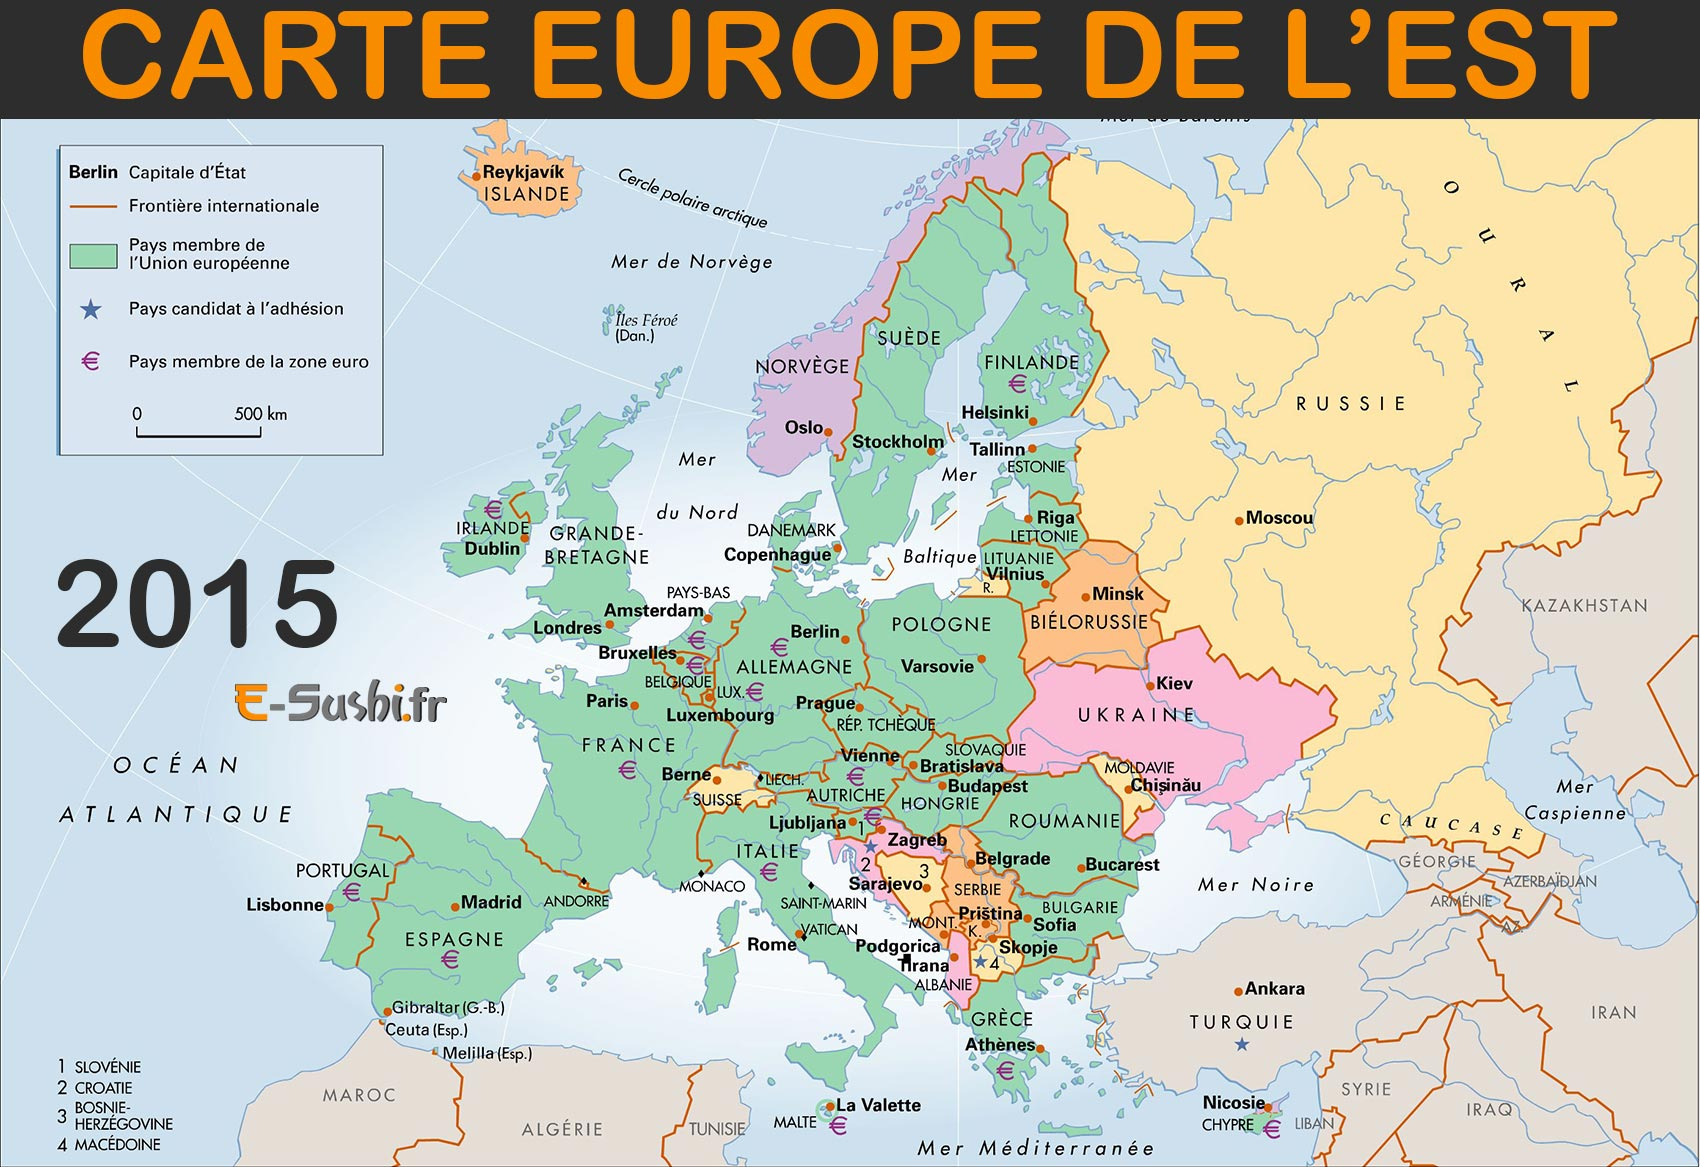 Carte Europe De L'est - Images Et Photos - Arts Et Voyages pour Carte Europe Est